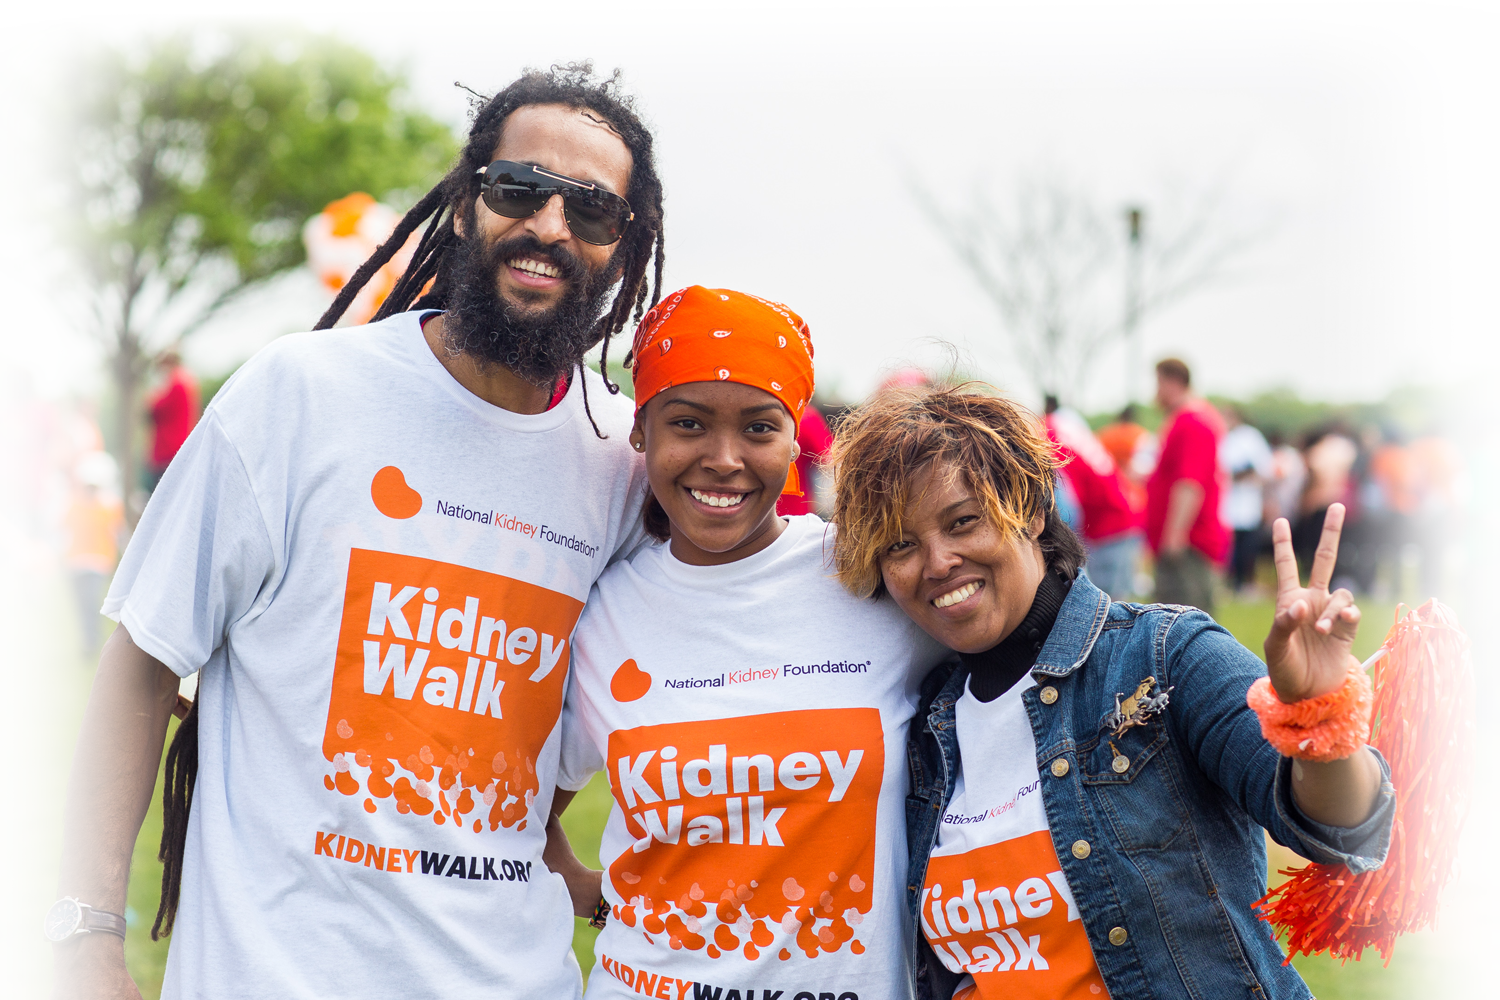 3 kidney walkers smiling